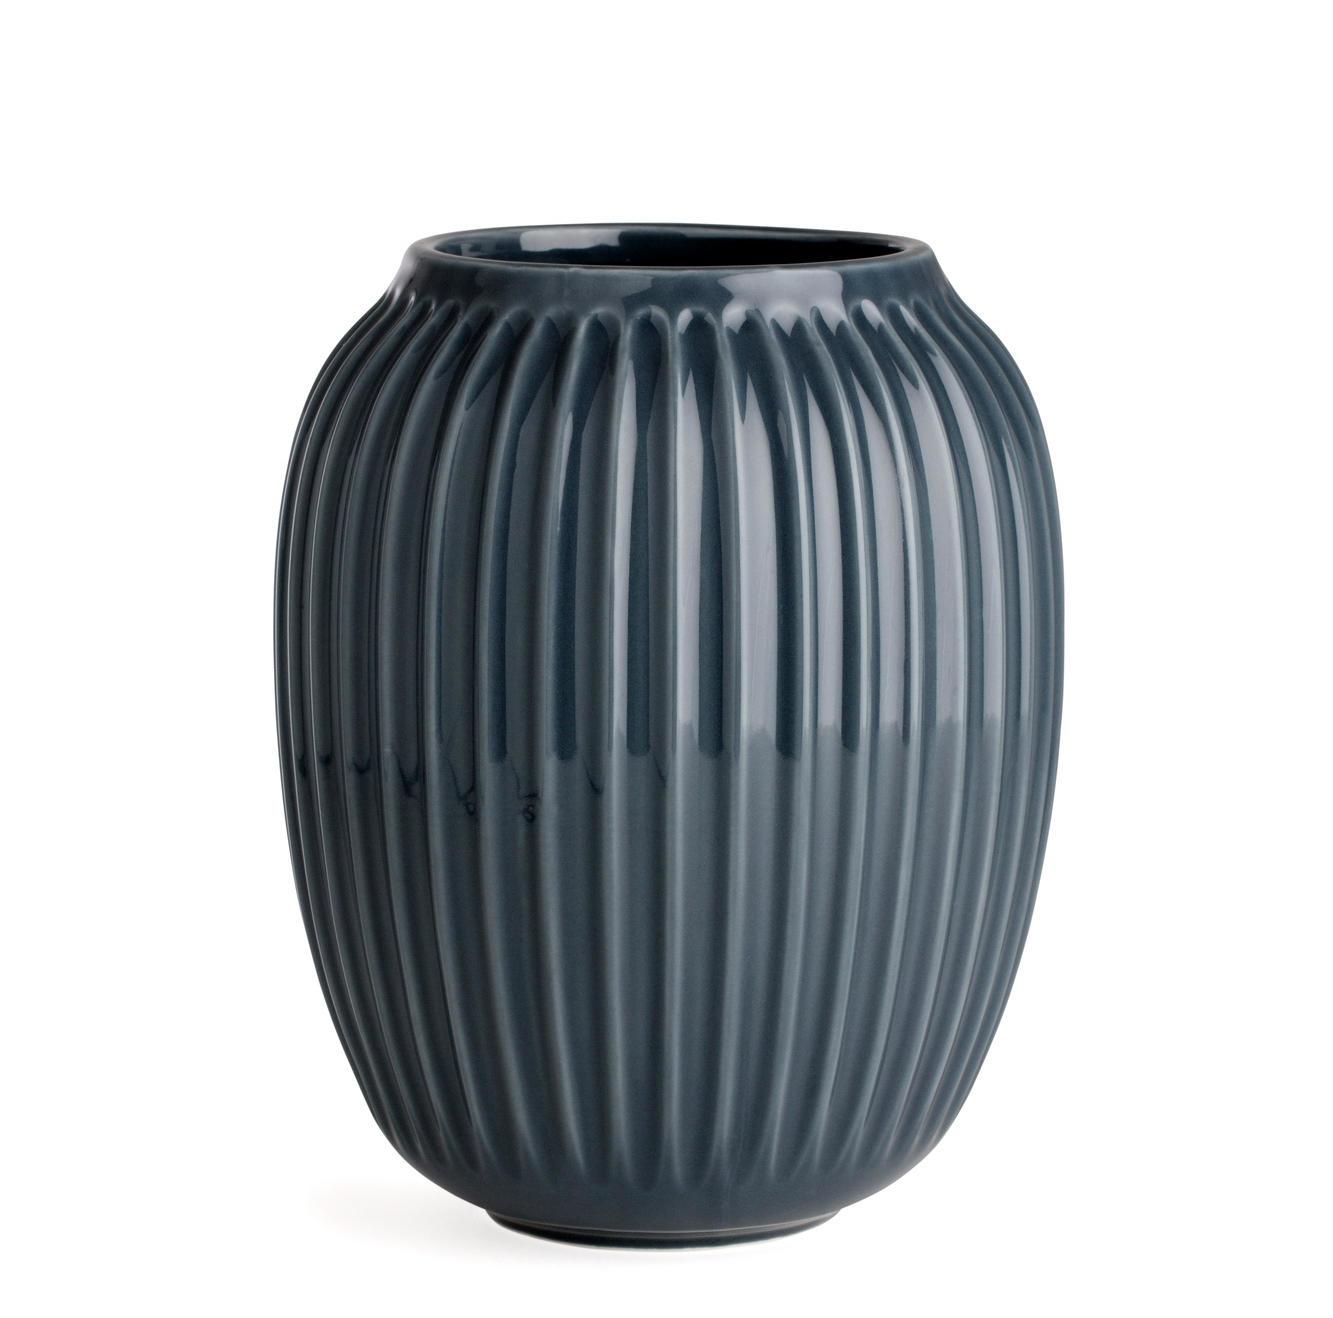 Keramická váza s drážkami v šedé barvě | Bella Rose